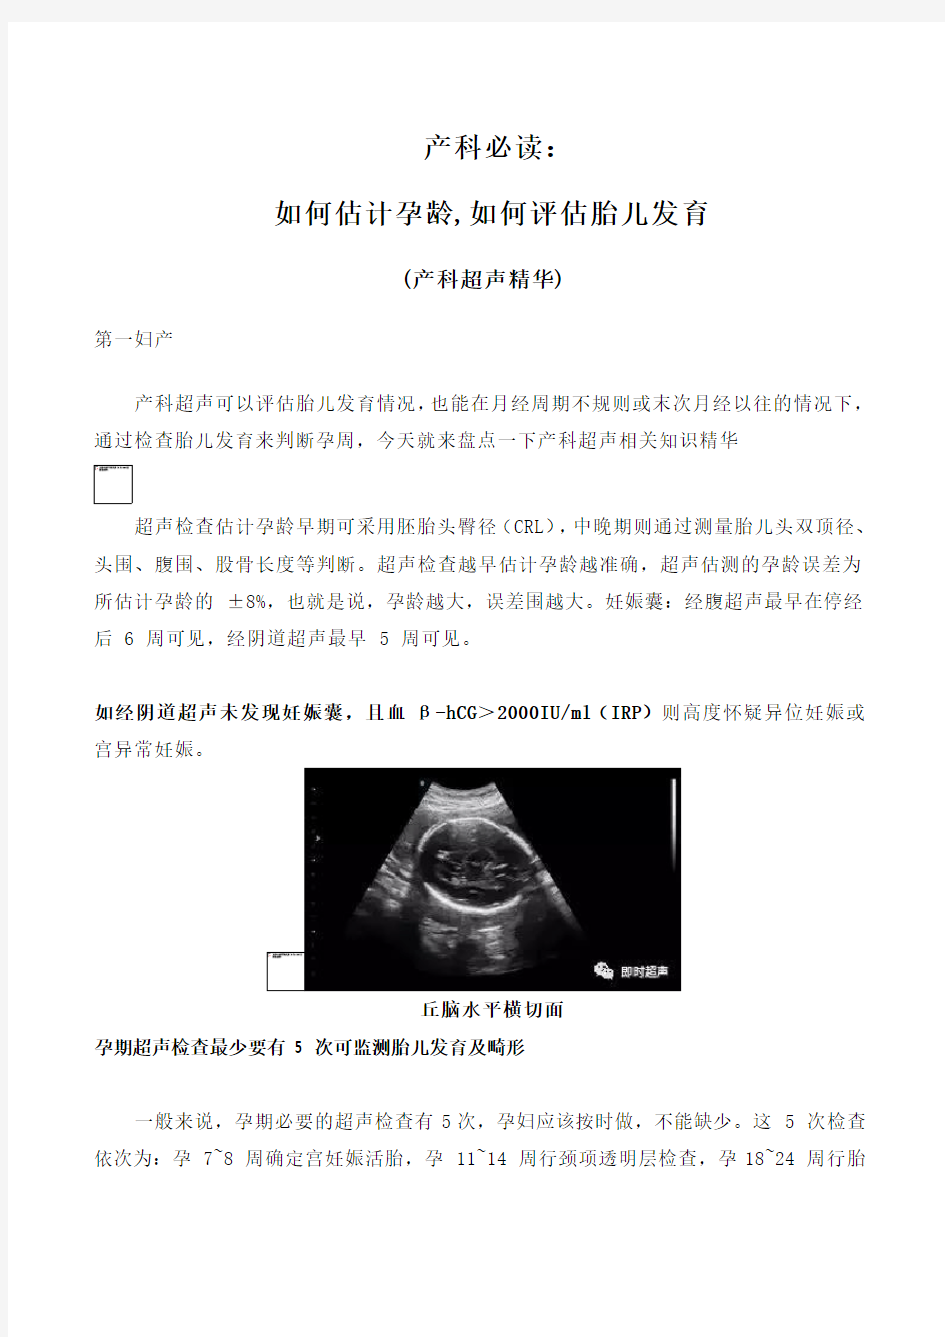 如何能估计孕龄,如何能评估胎儿发育